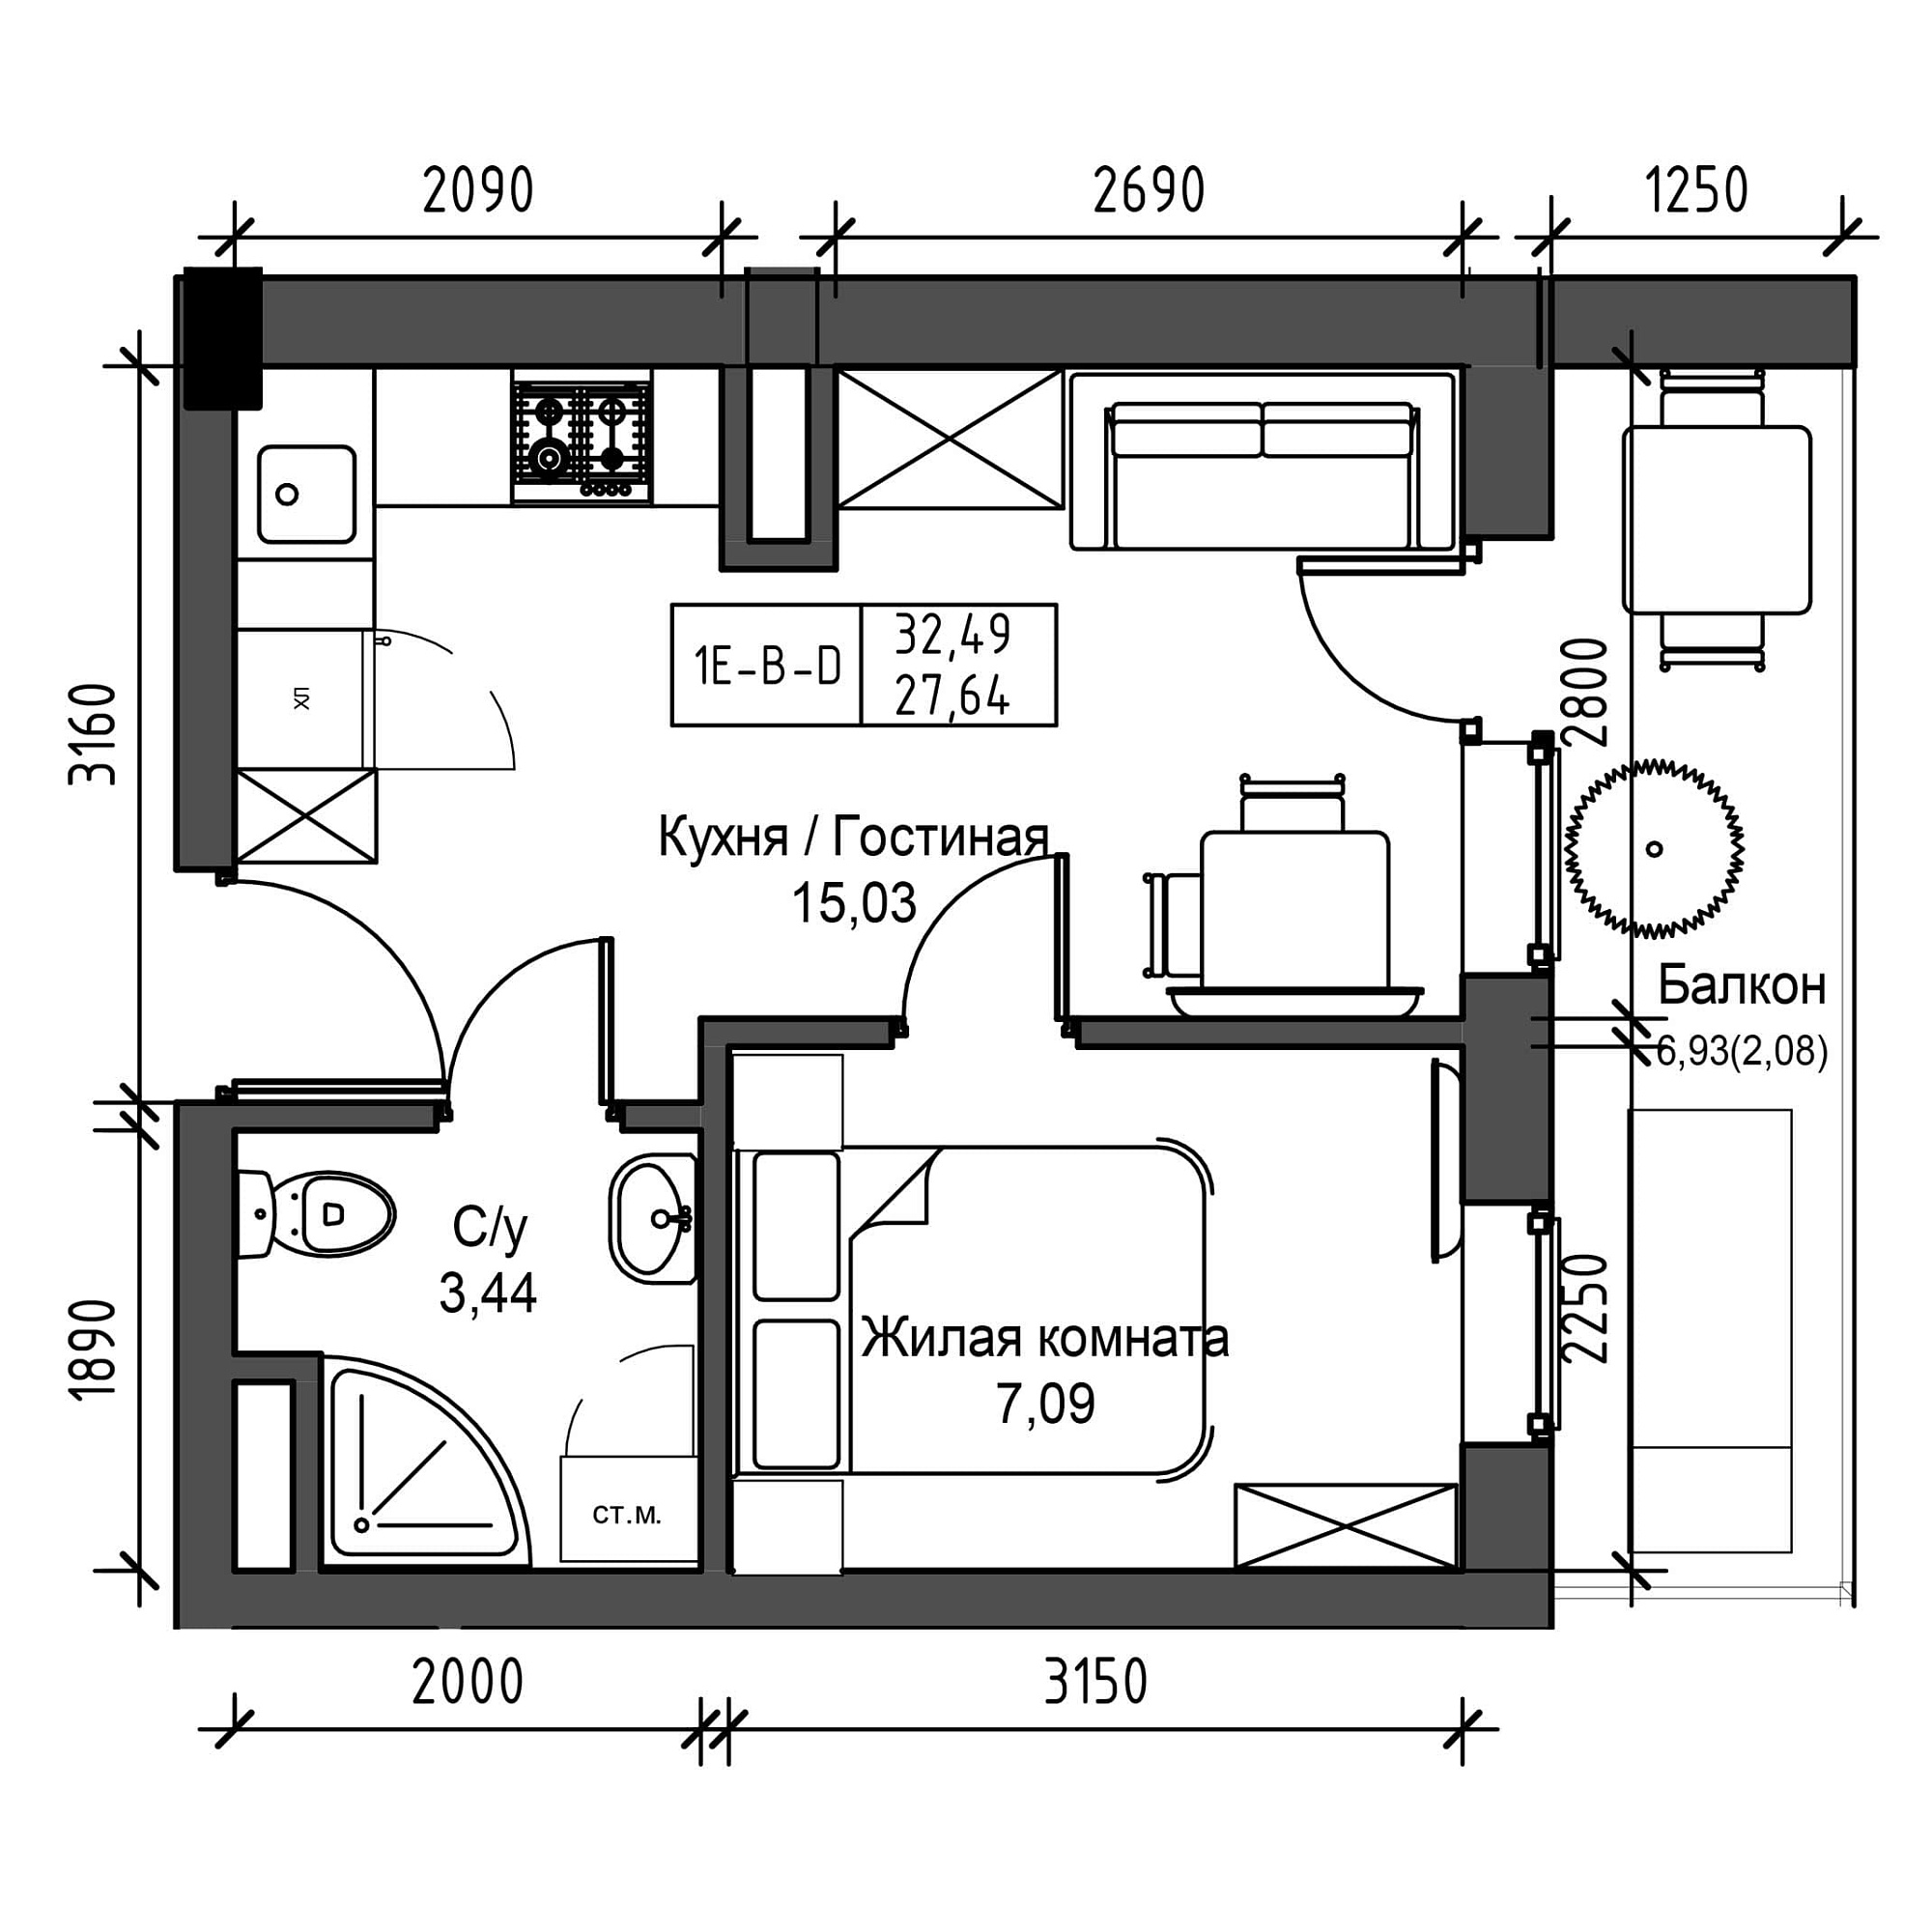 Планировка 1-к квартира площей 27.64м2, UM-001-05/0001.